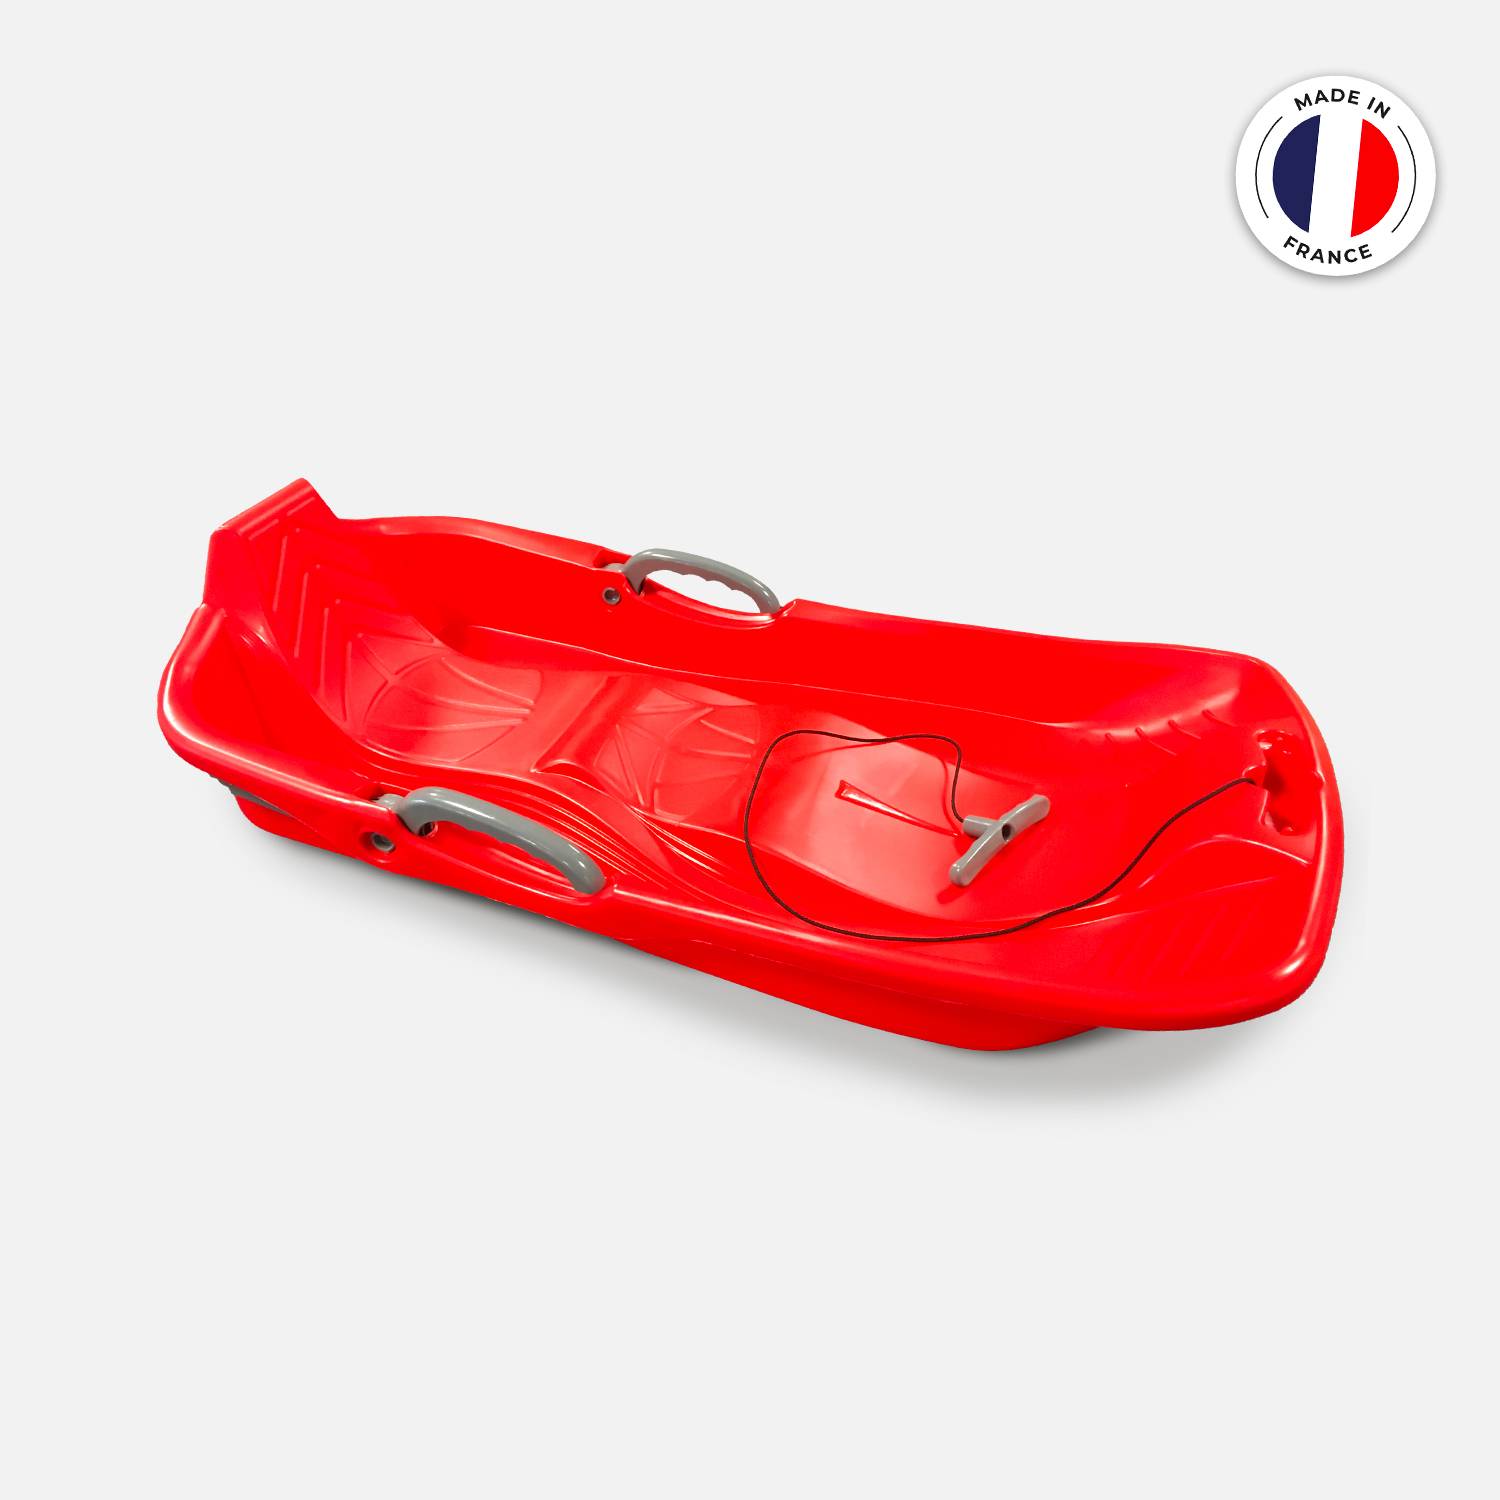 Marreta vermelha de 2 lugares com travões, cordel e cabo, Made in France  Photo1